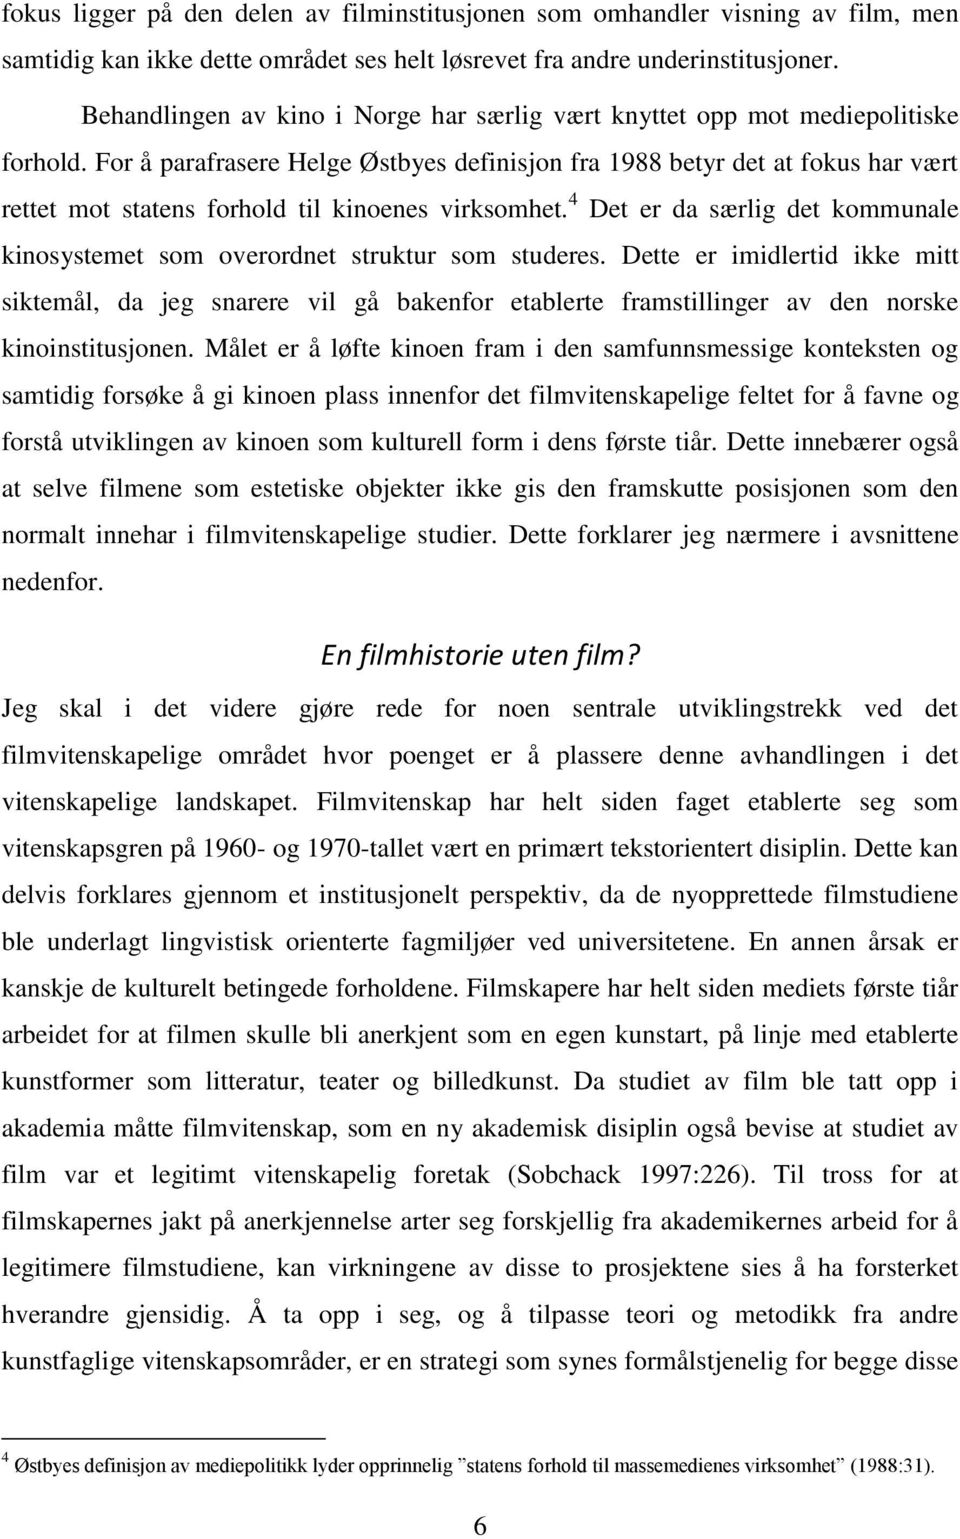 For å parafrasere Helge Østbyes definisjon fra 1988 betyr det at fokus har vært rettet mot statens forhold til kinoenes virksomhet.